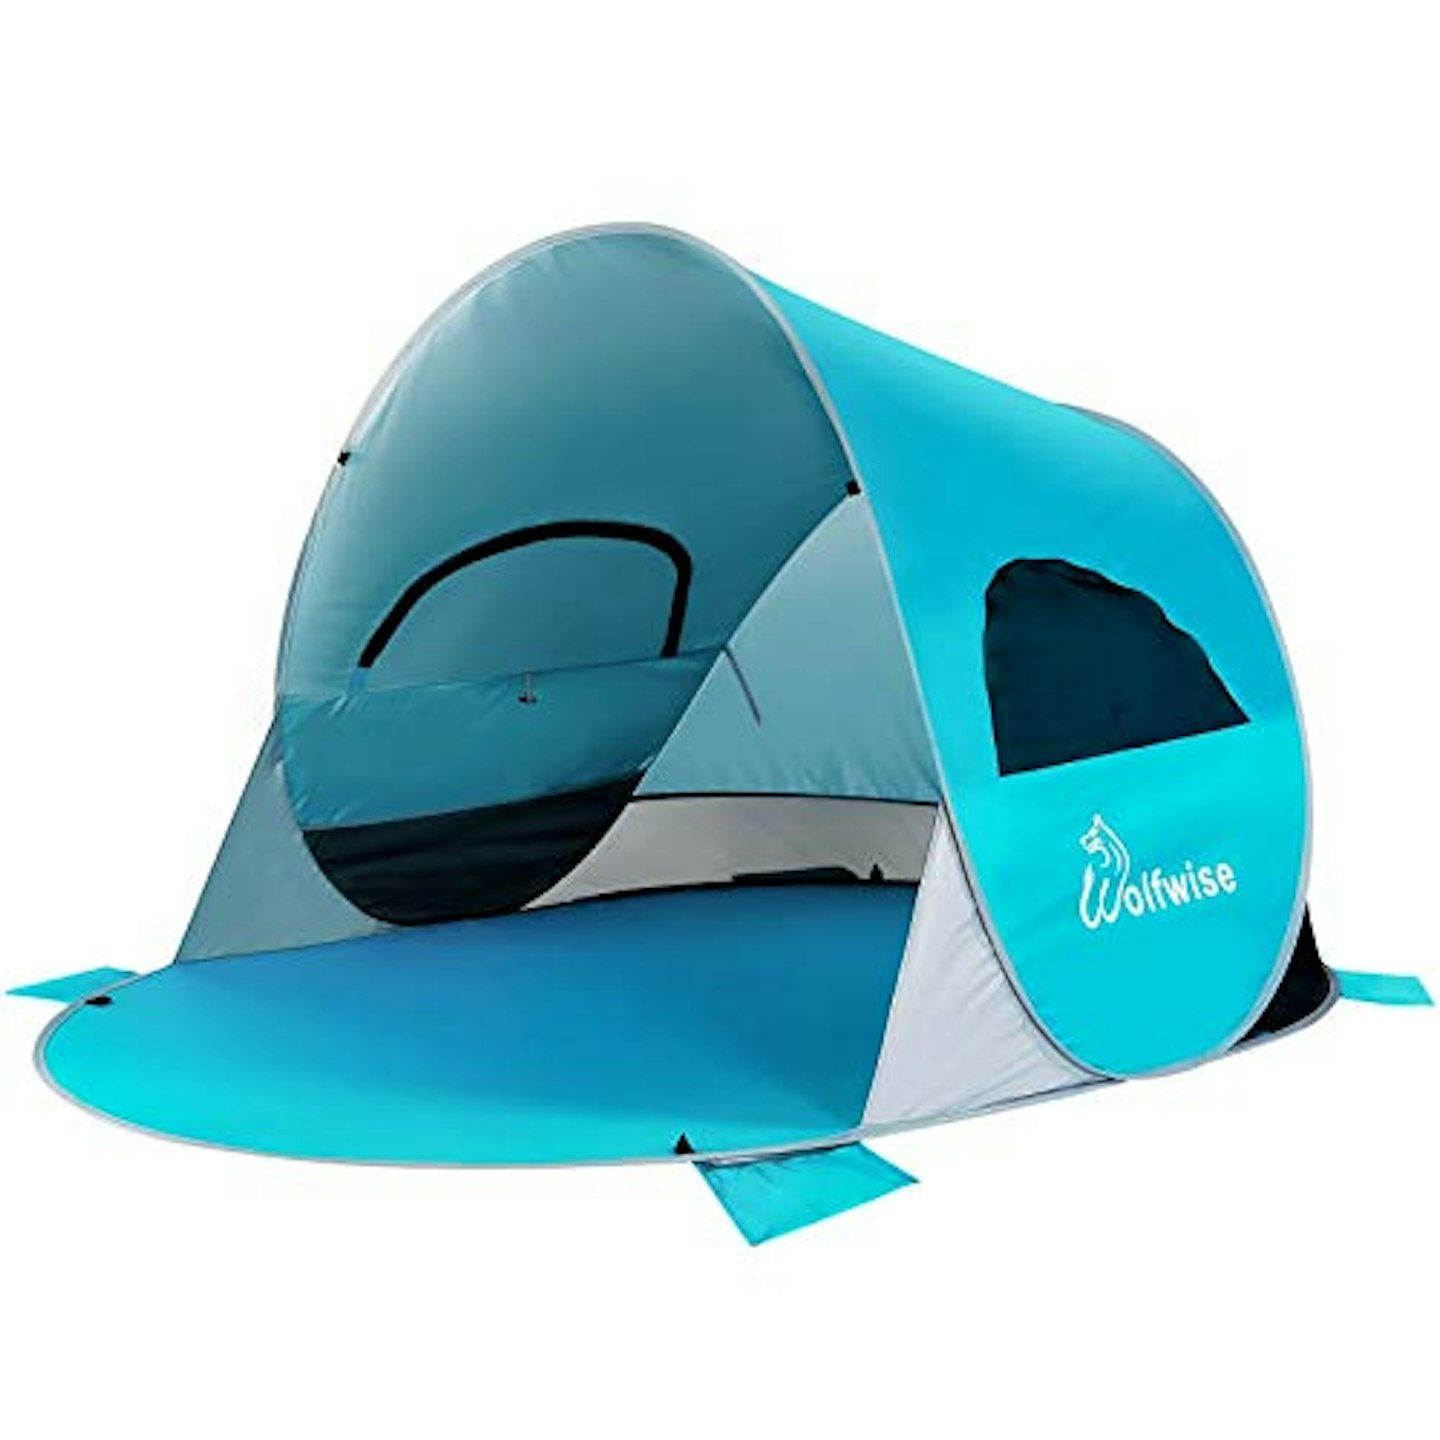 Best pop up: 3-4 Person Pop Up Beach Tent